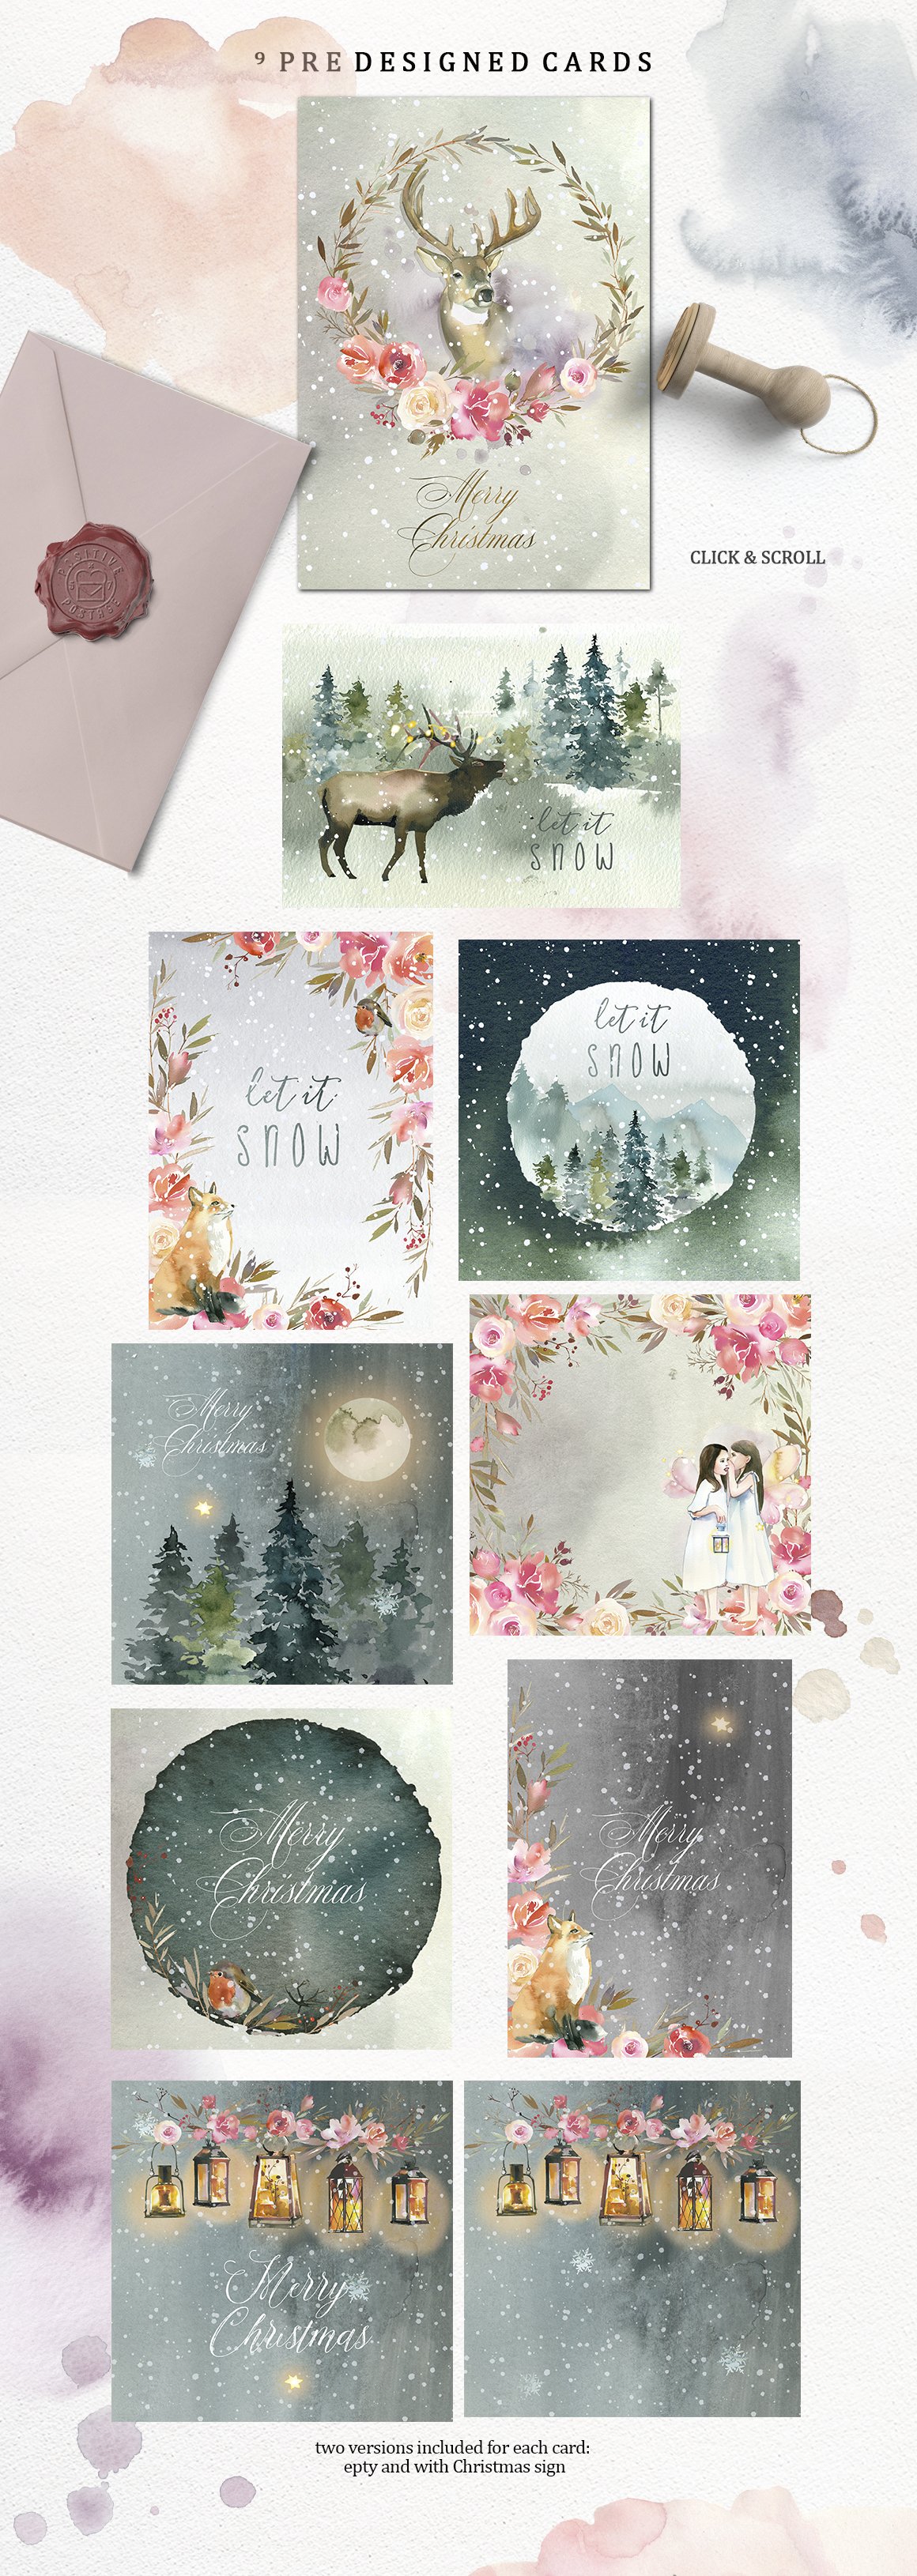 冬季梦想童话美丽大型水彩手绘剪贴画合辑包 Dream - F